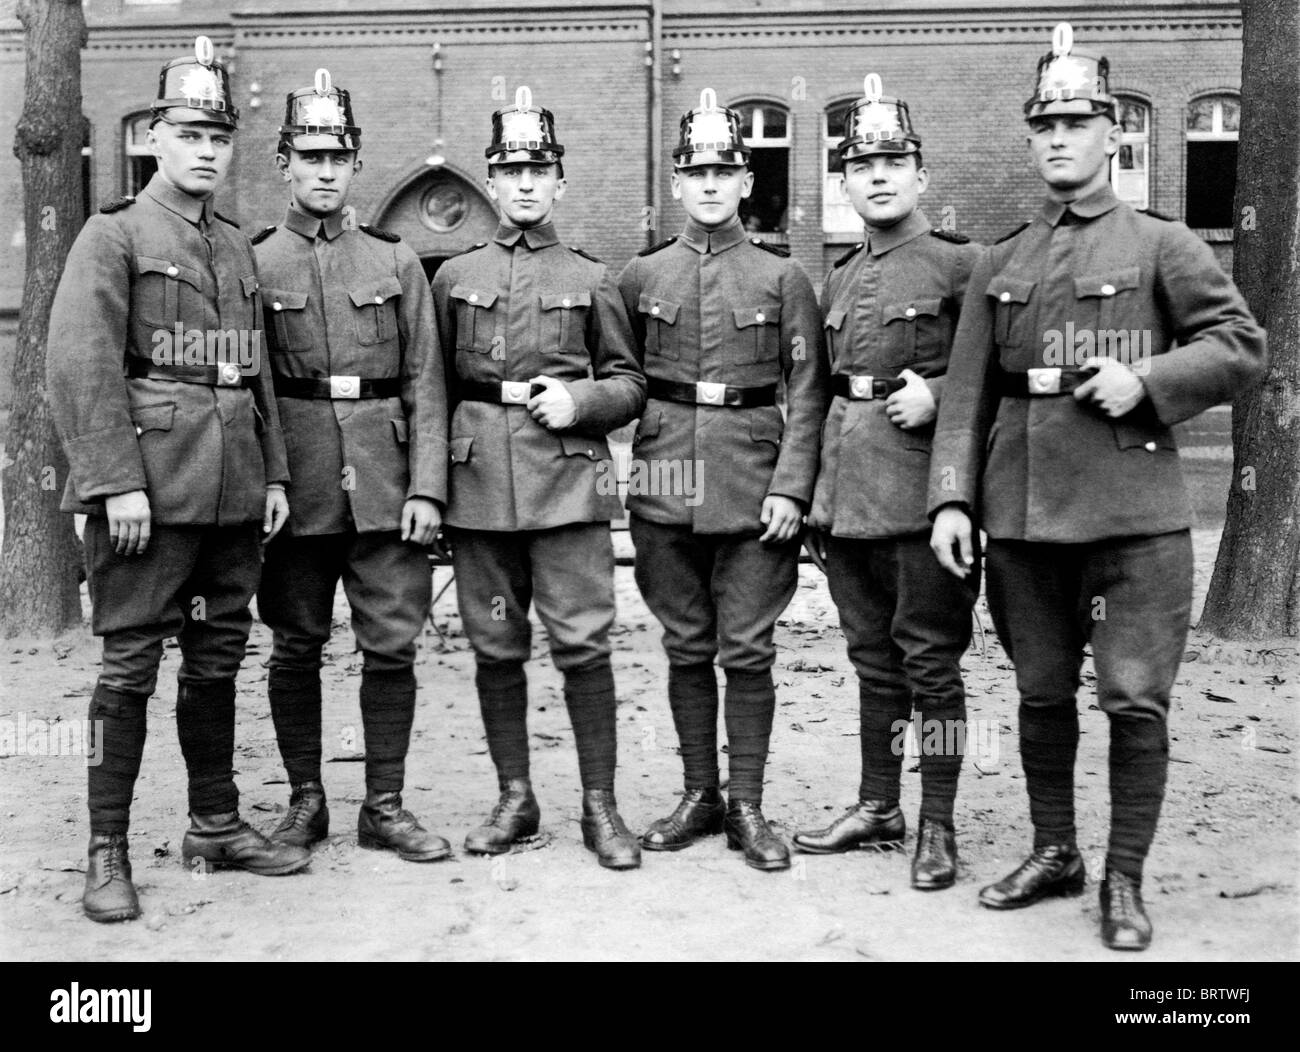 Poliziotti, immagine storica, ca. 1930 Foto Stock